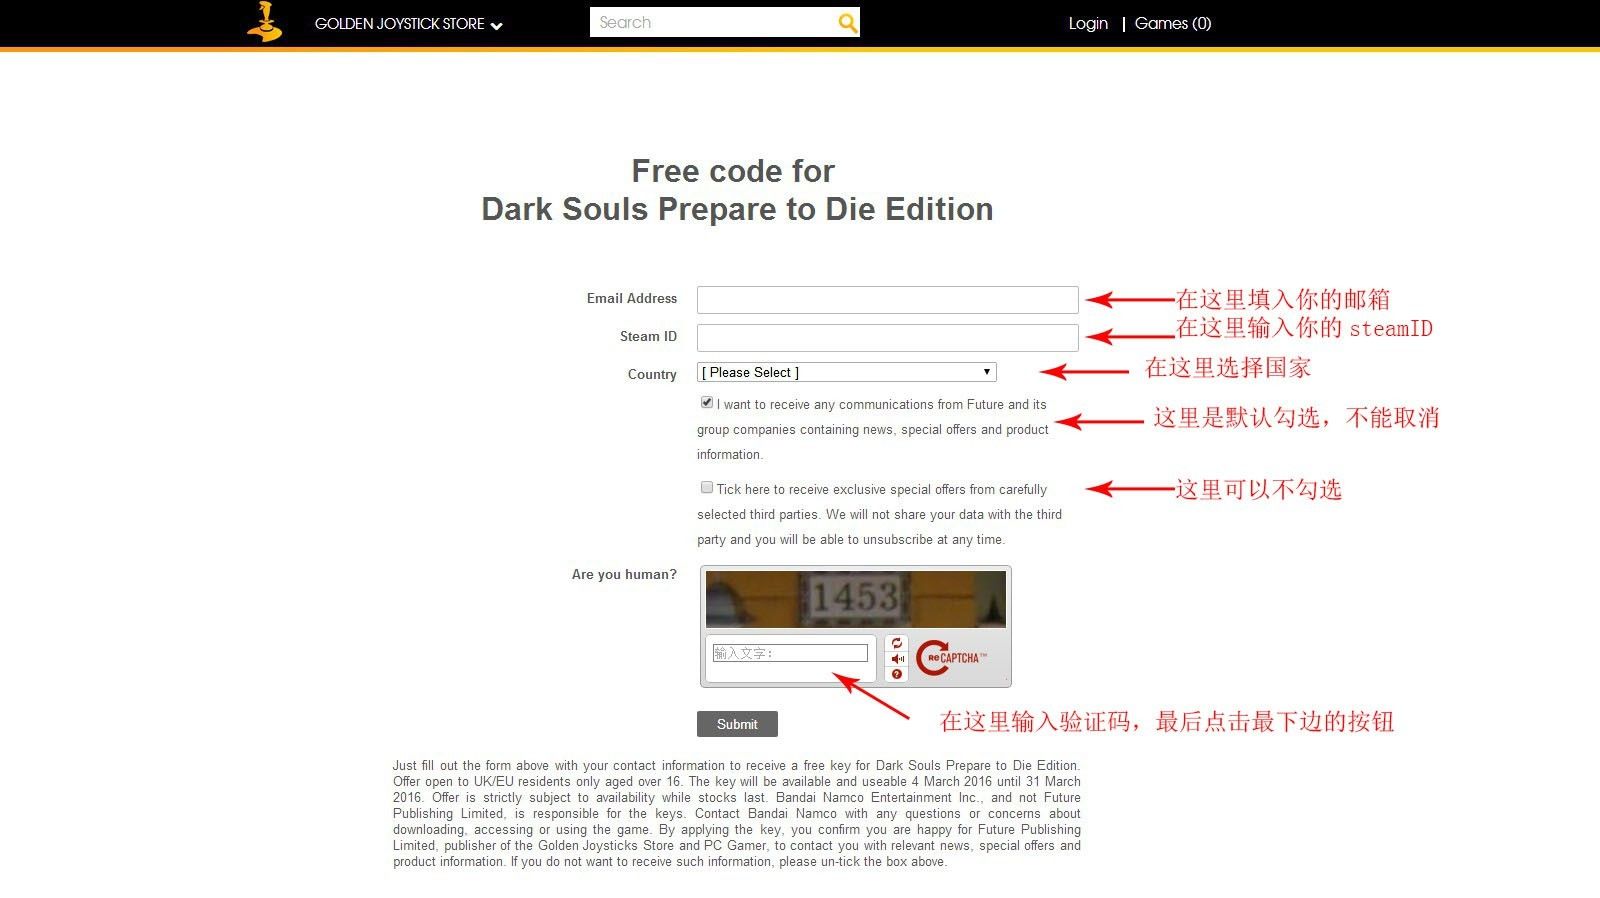 庆祝《黑暗之魂3》国外网站免费送《黑暗之魂1》！